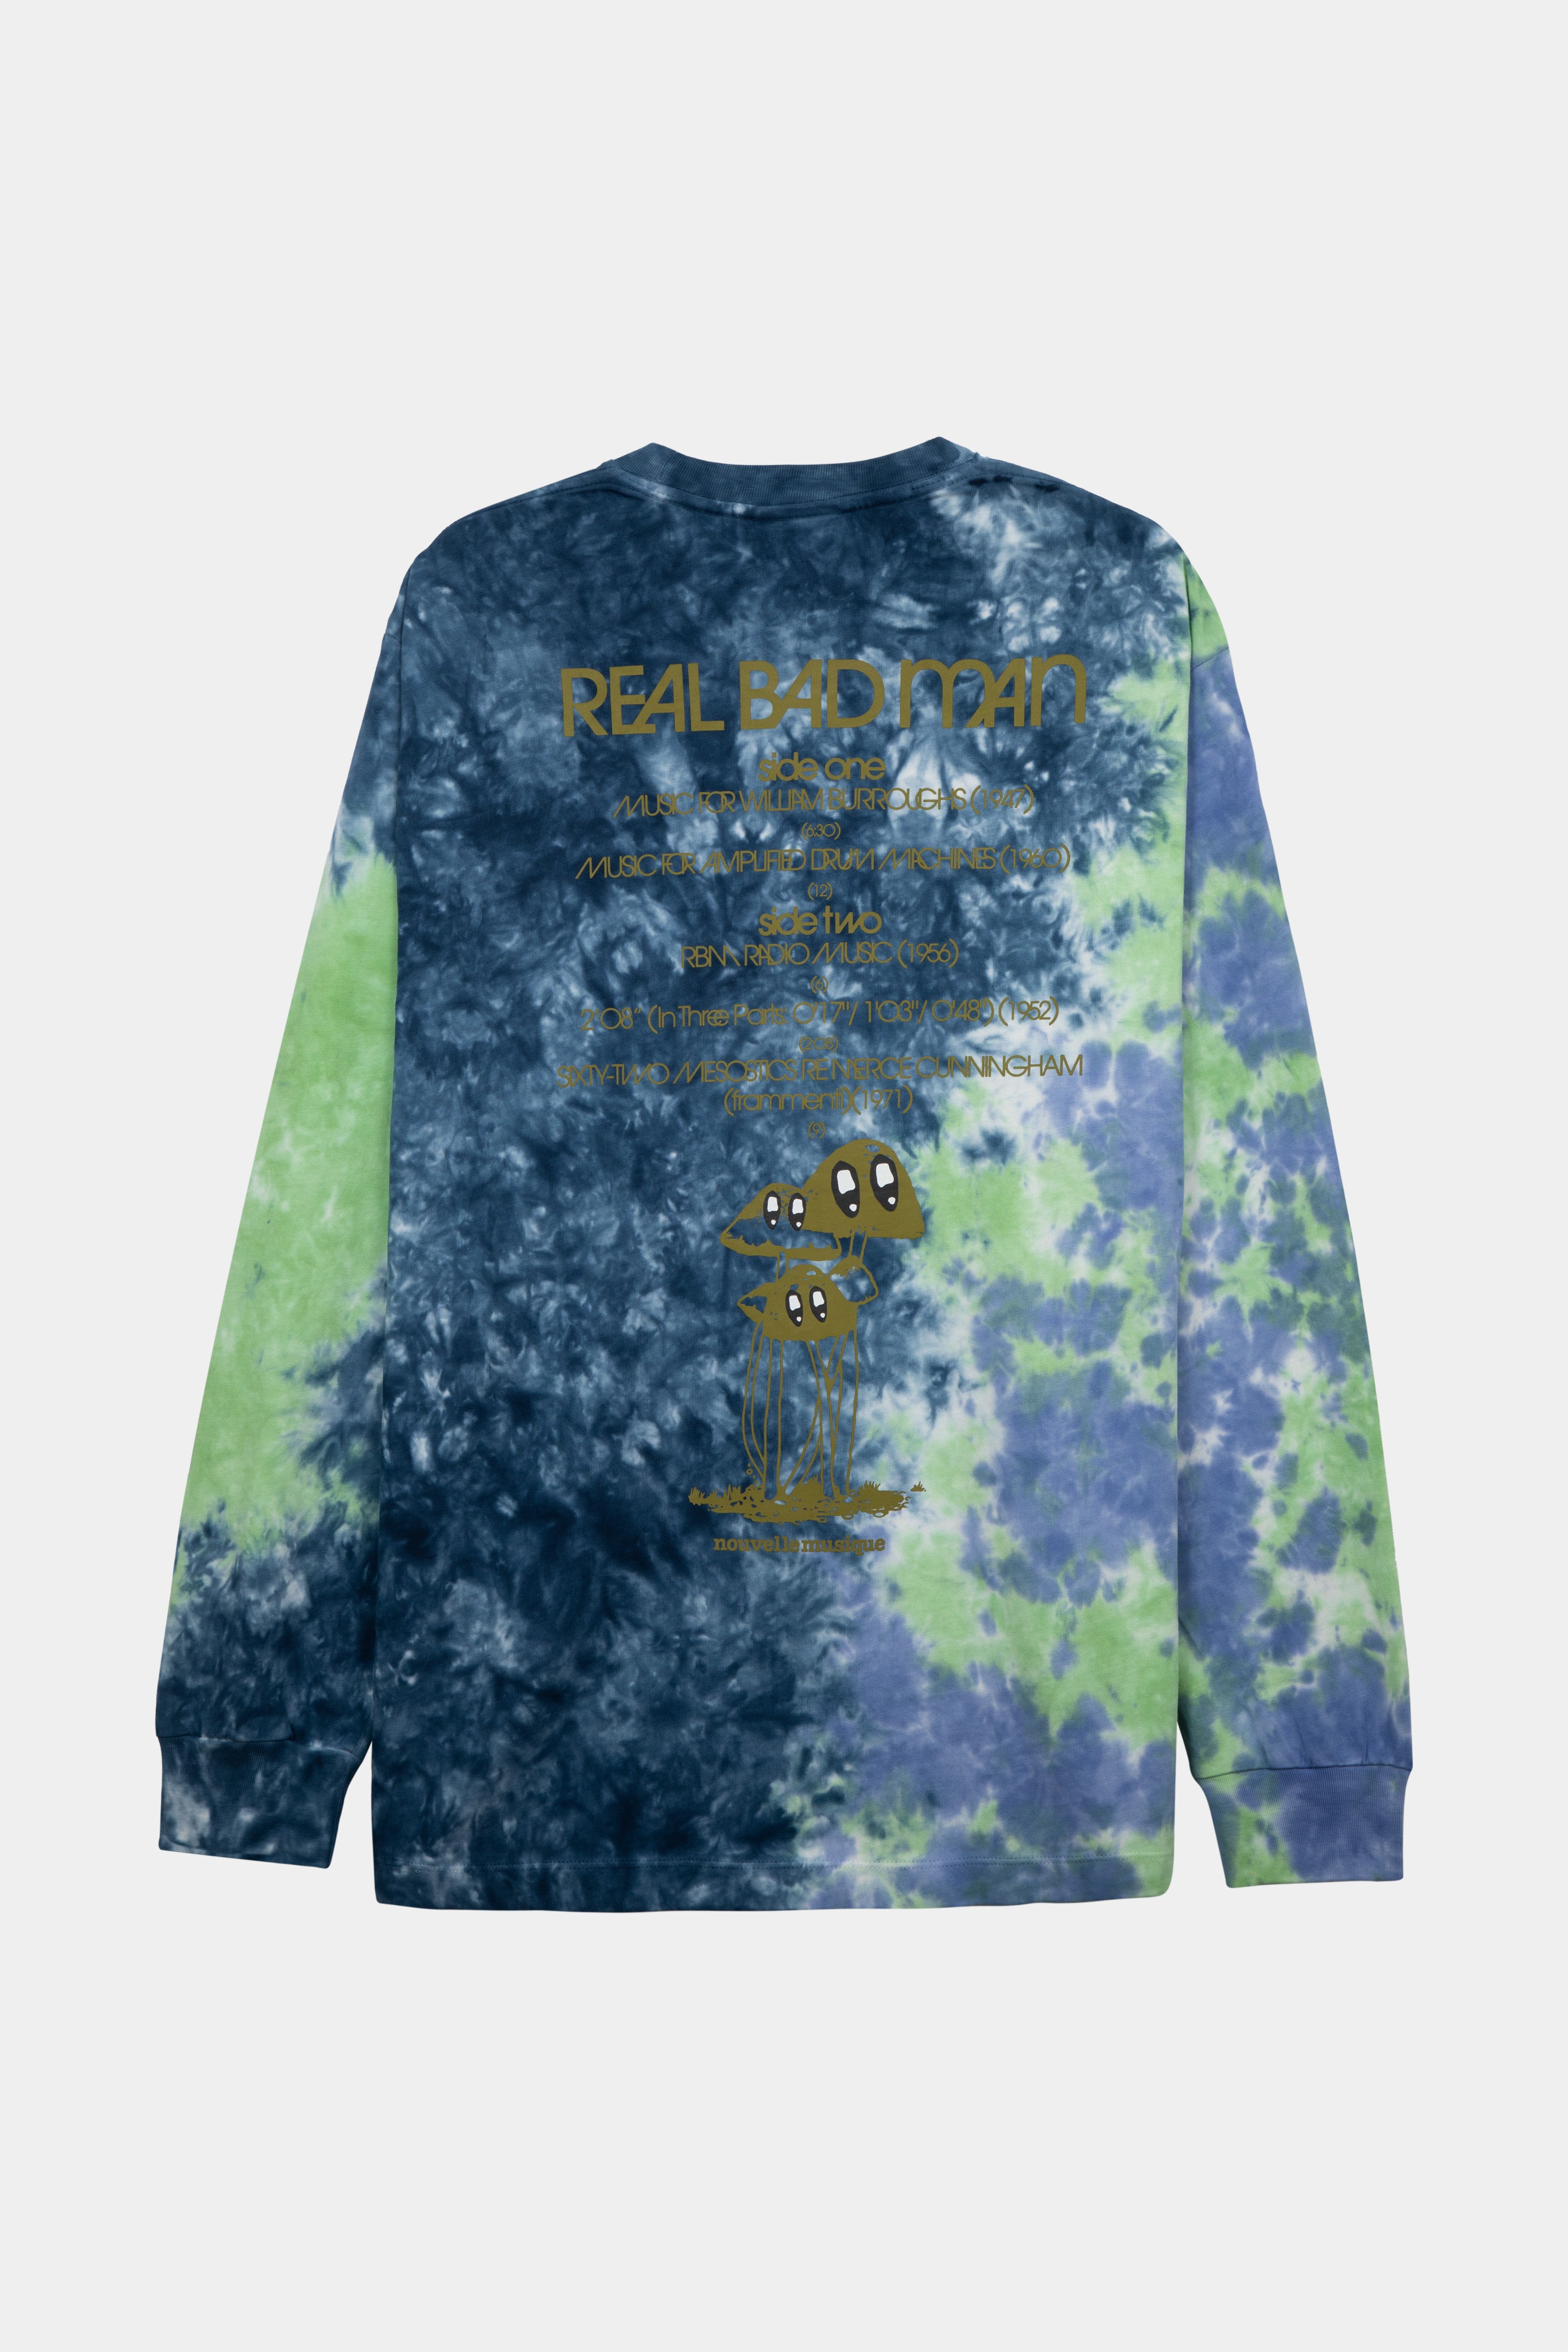 Selectshop FRAME - REAL BAD MAN Nouvelle Musique LS Tee T-Shirts Concept Store Dubai